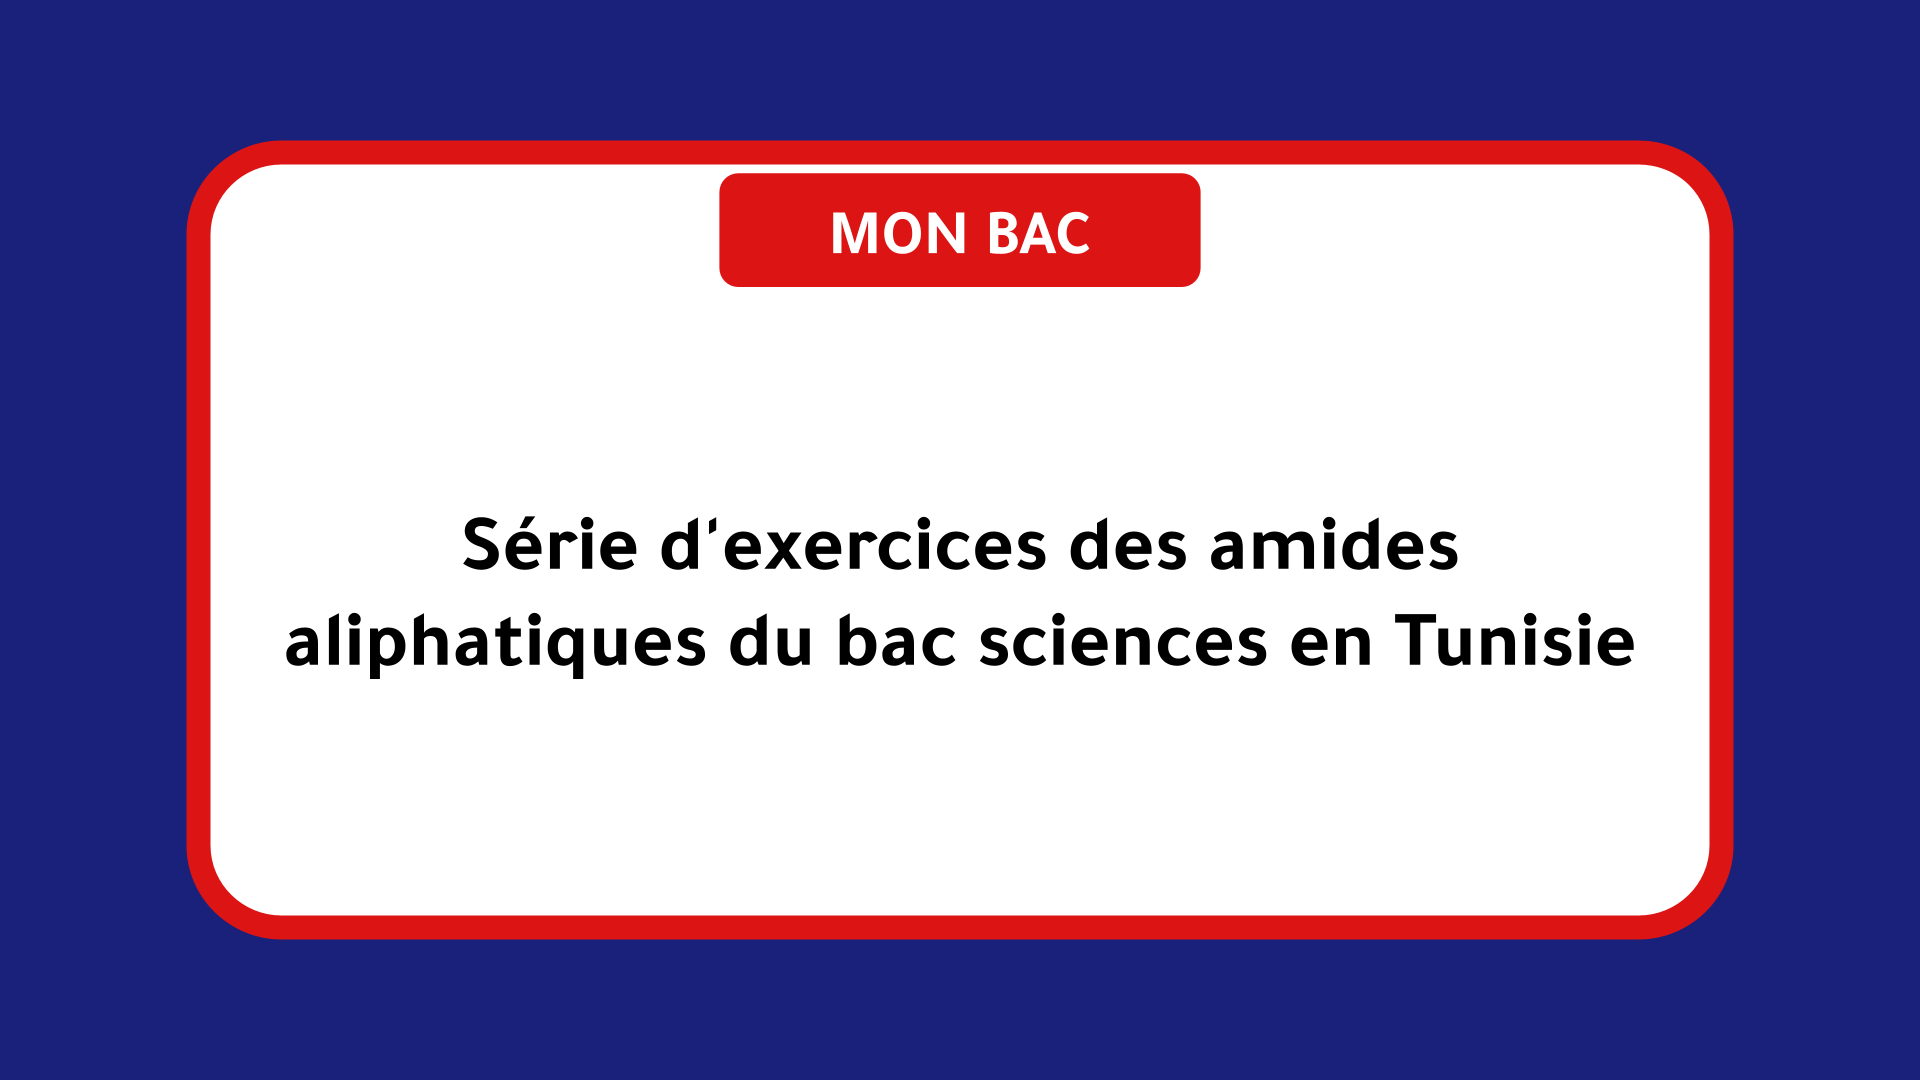 Série d'exercices des amides aliphatiques bac sciences Tunisie